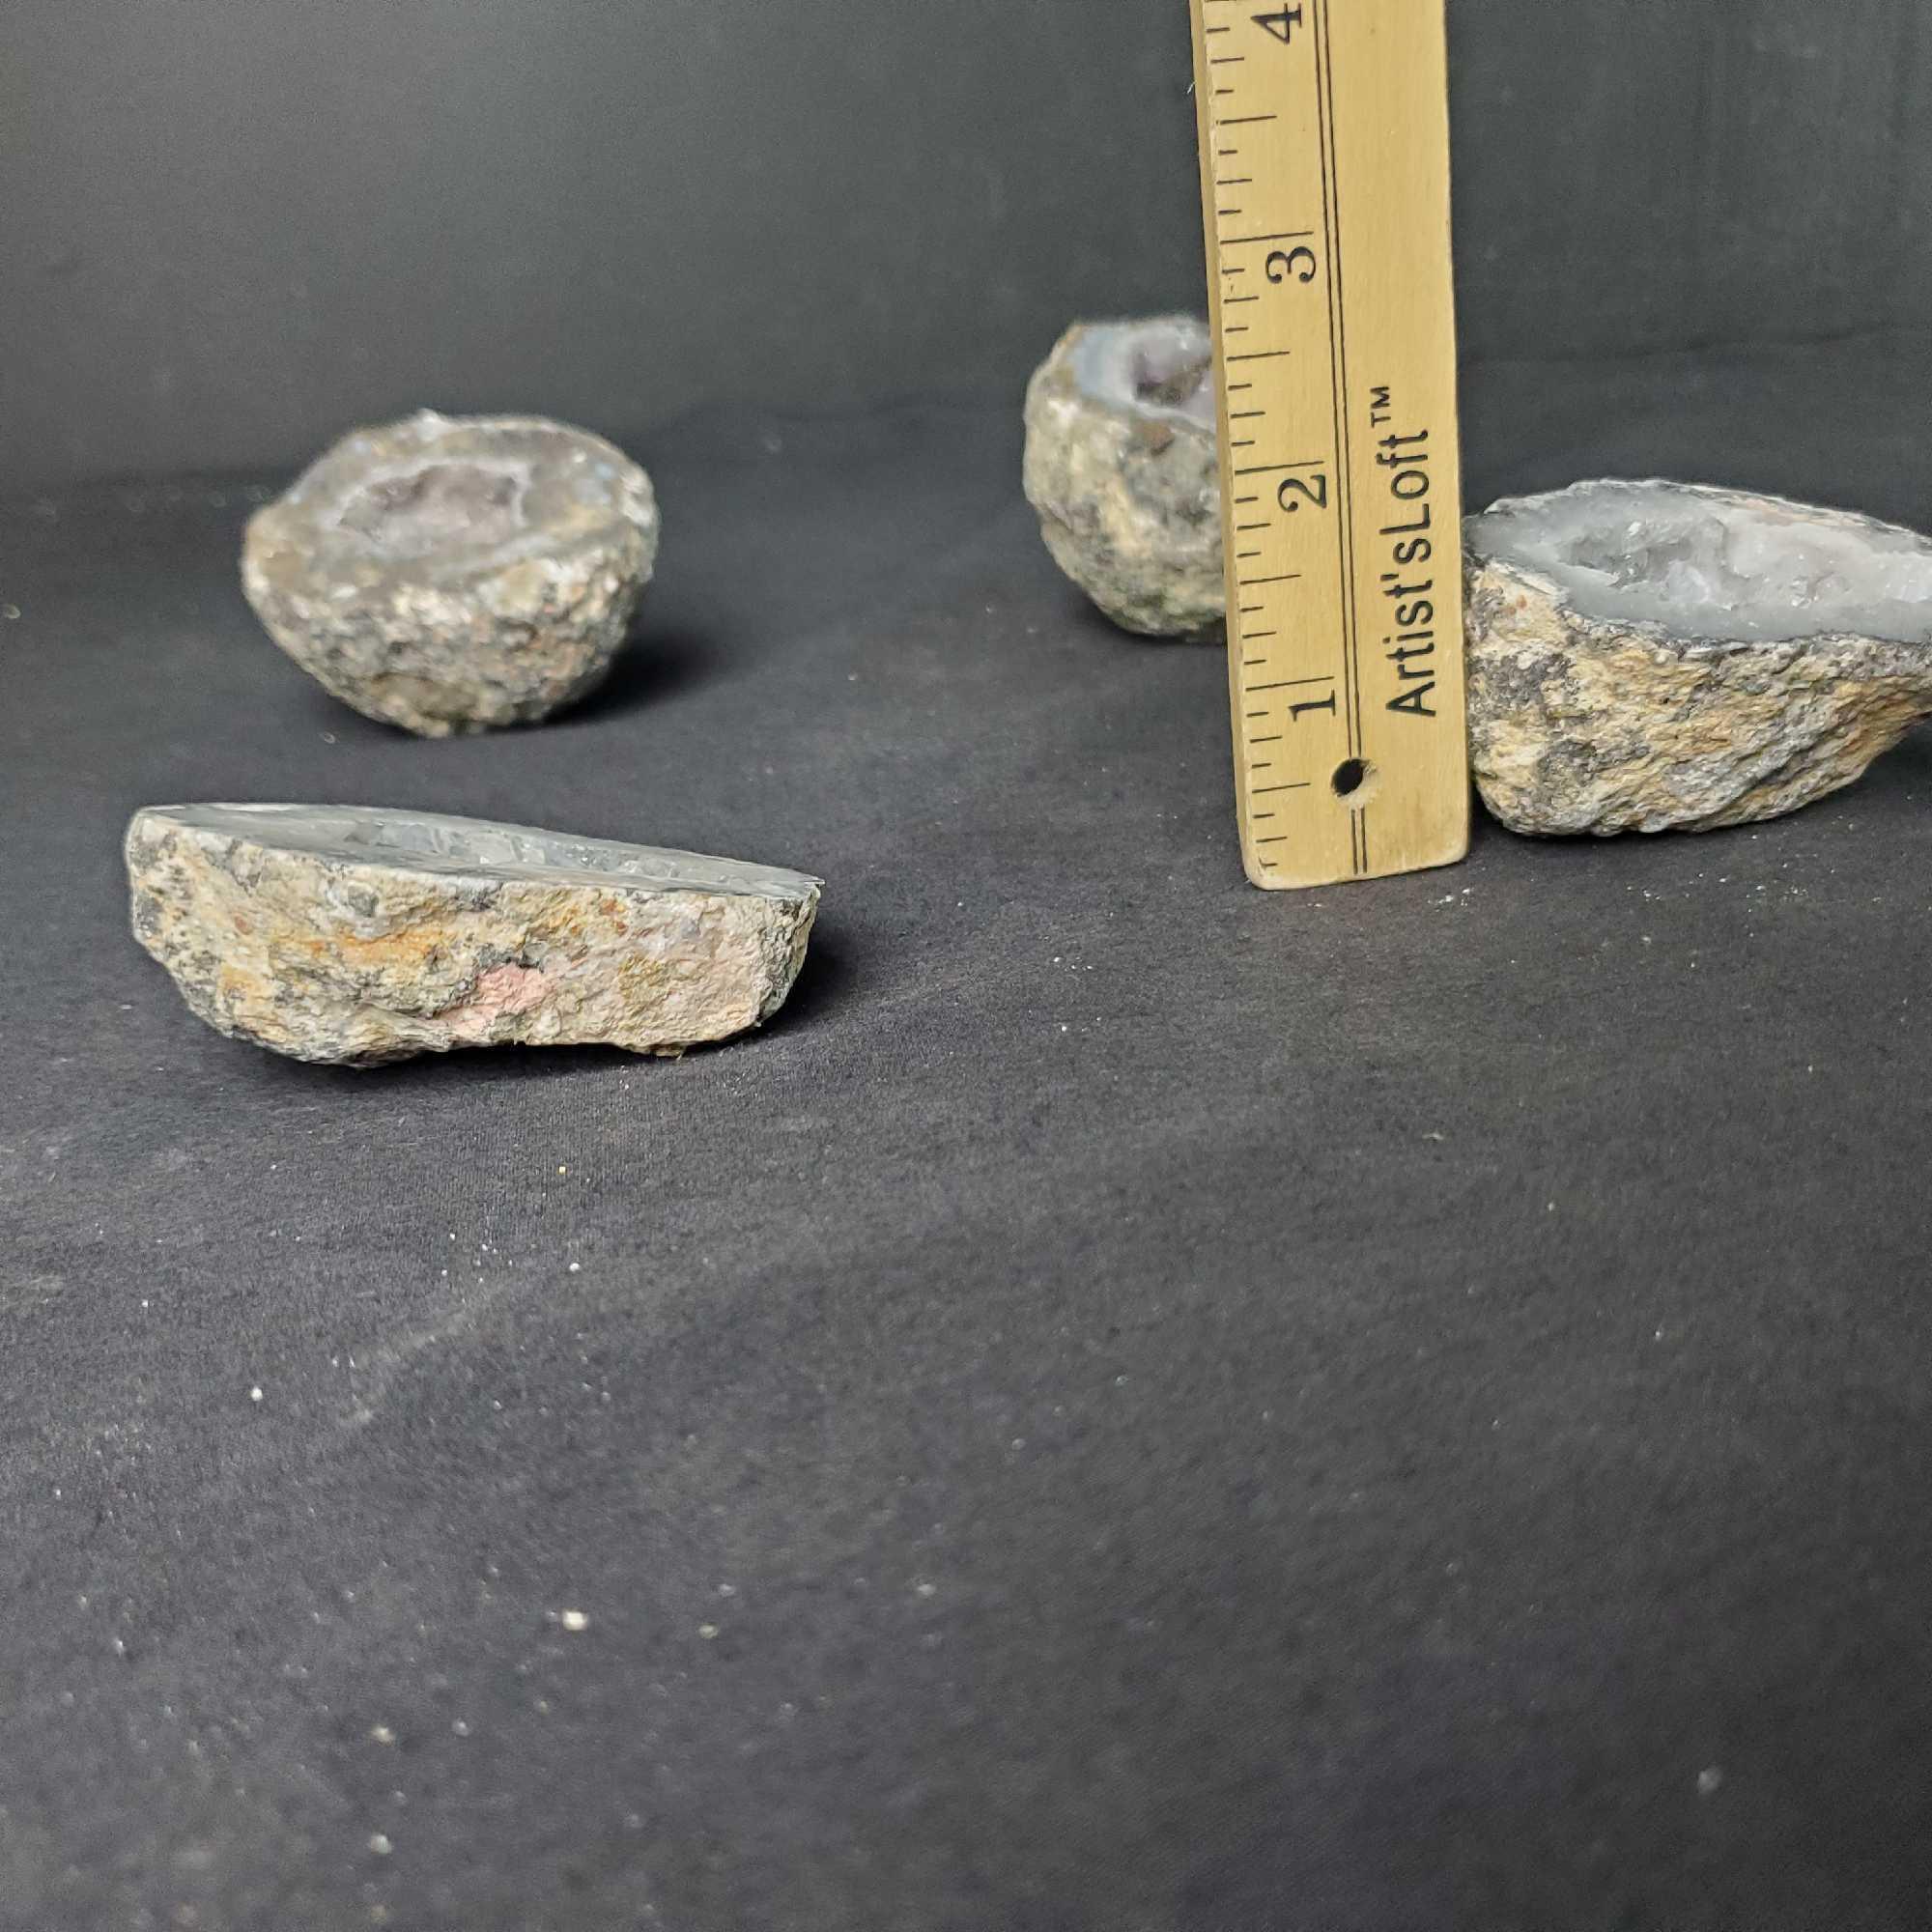 Lot of 4 quartz Geode specimens